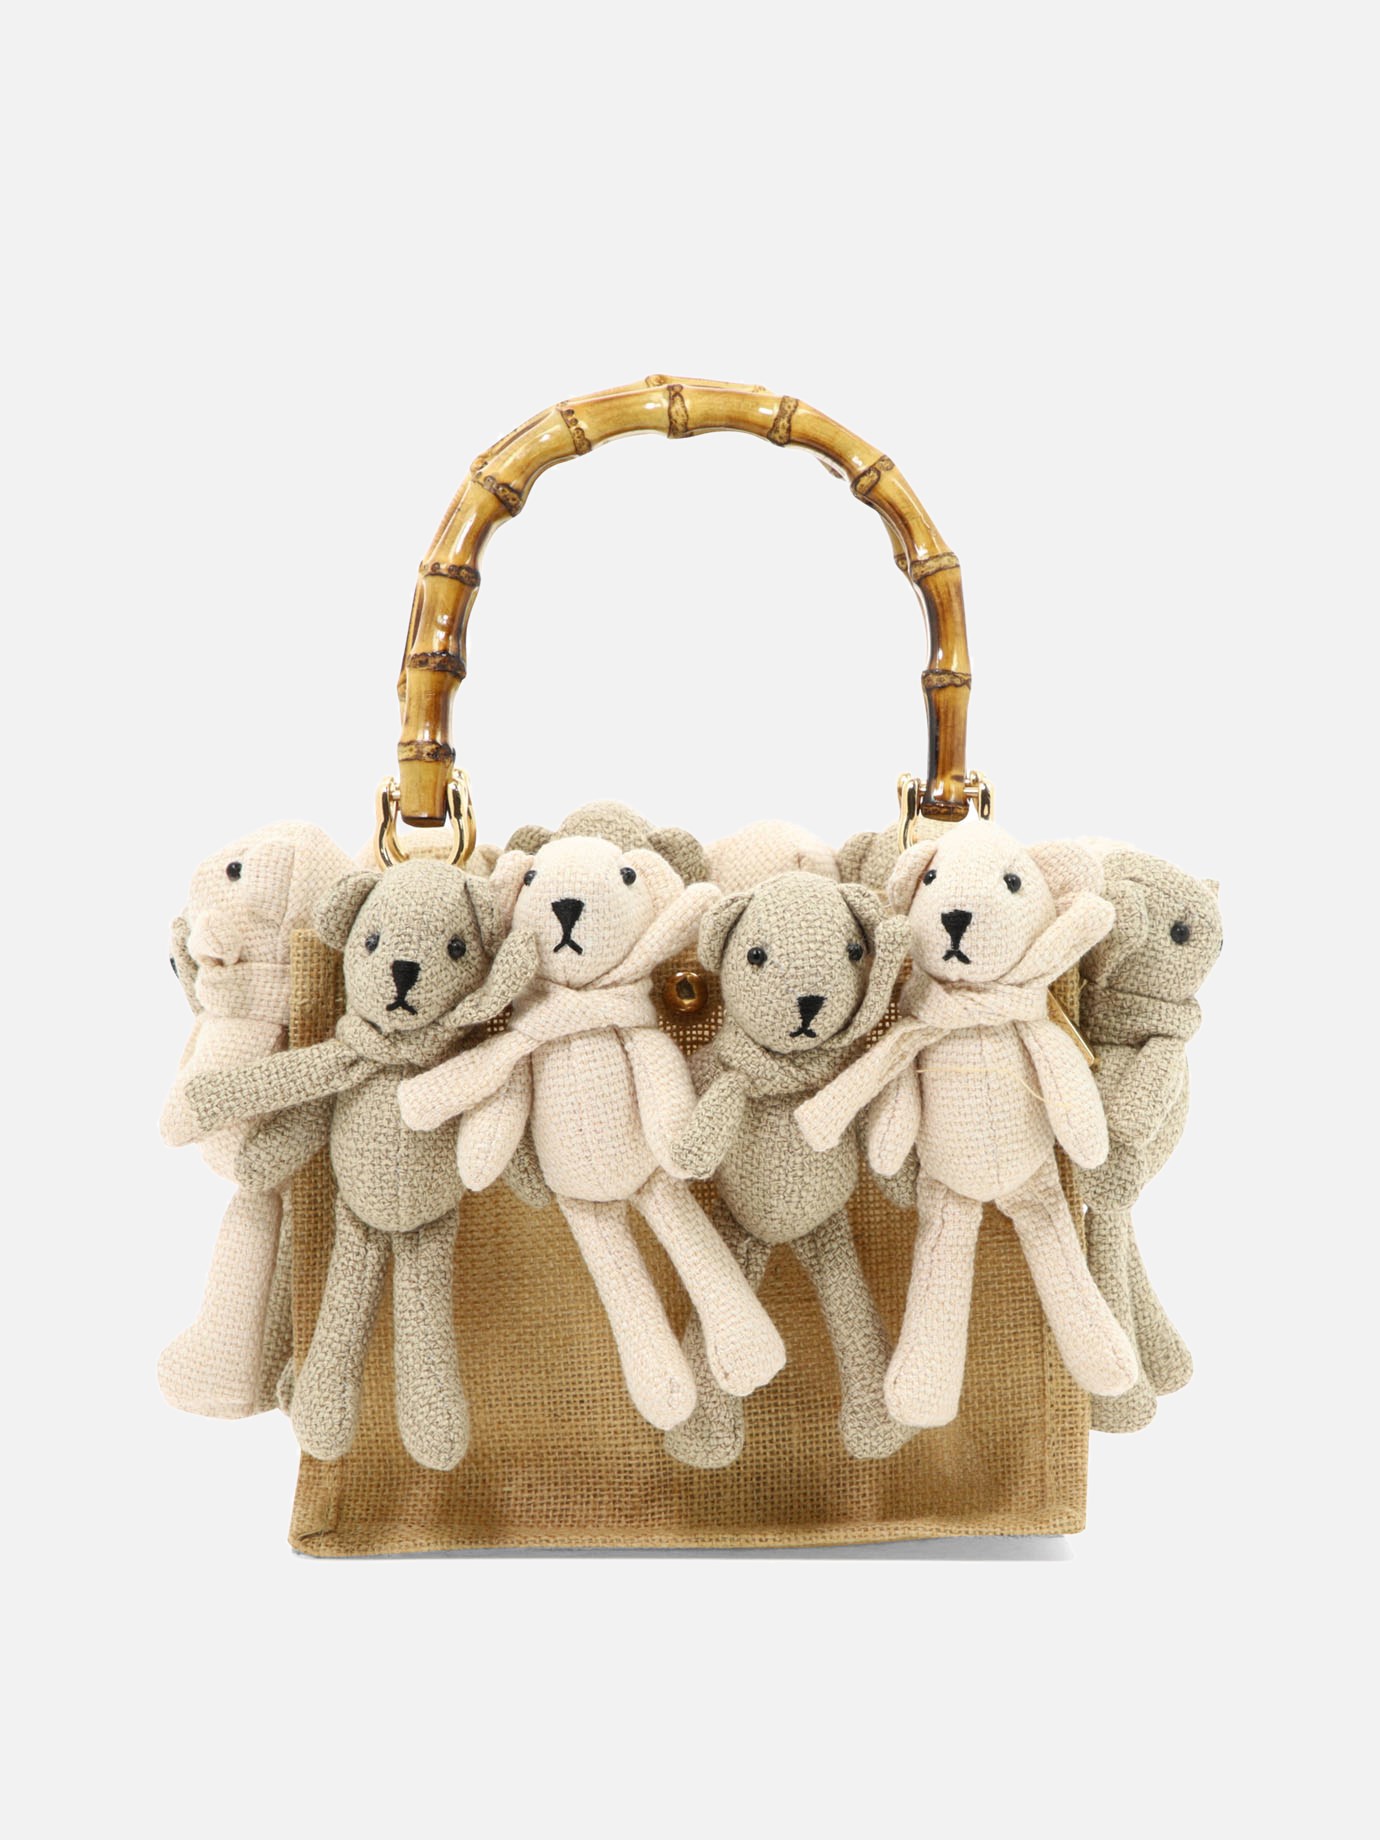  Teddy  handbagby La Milanesa - 3